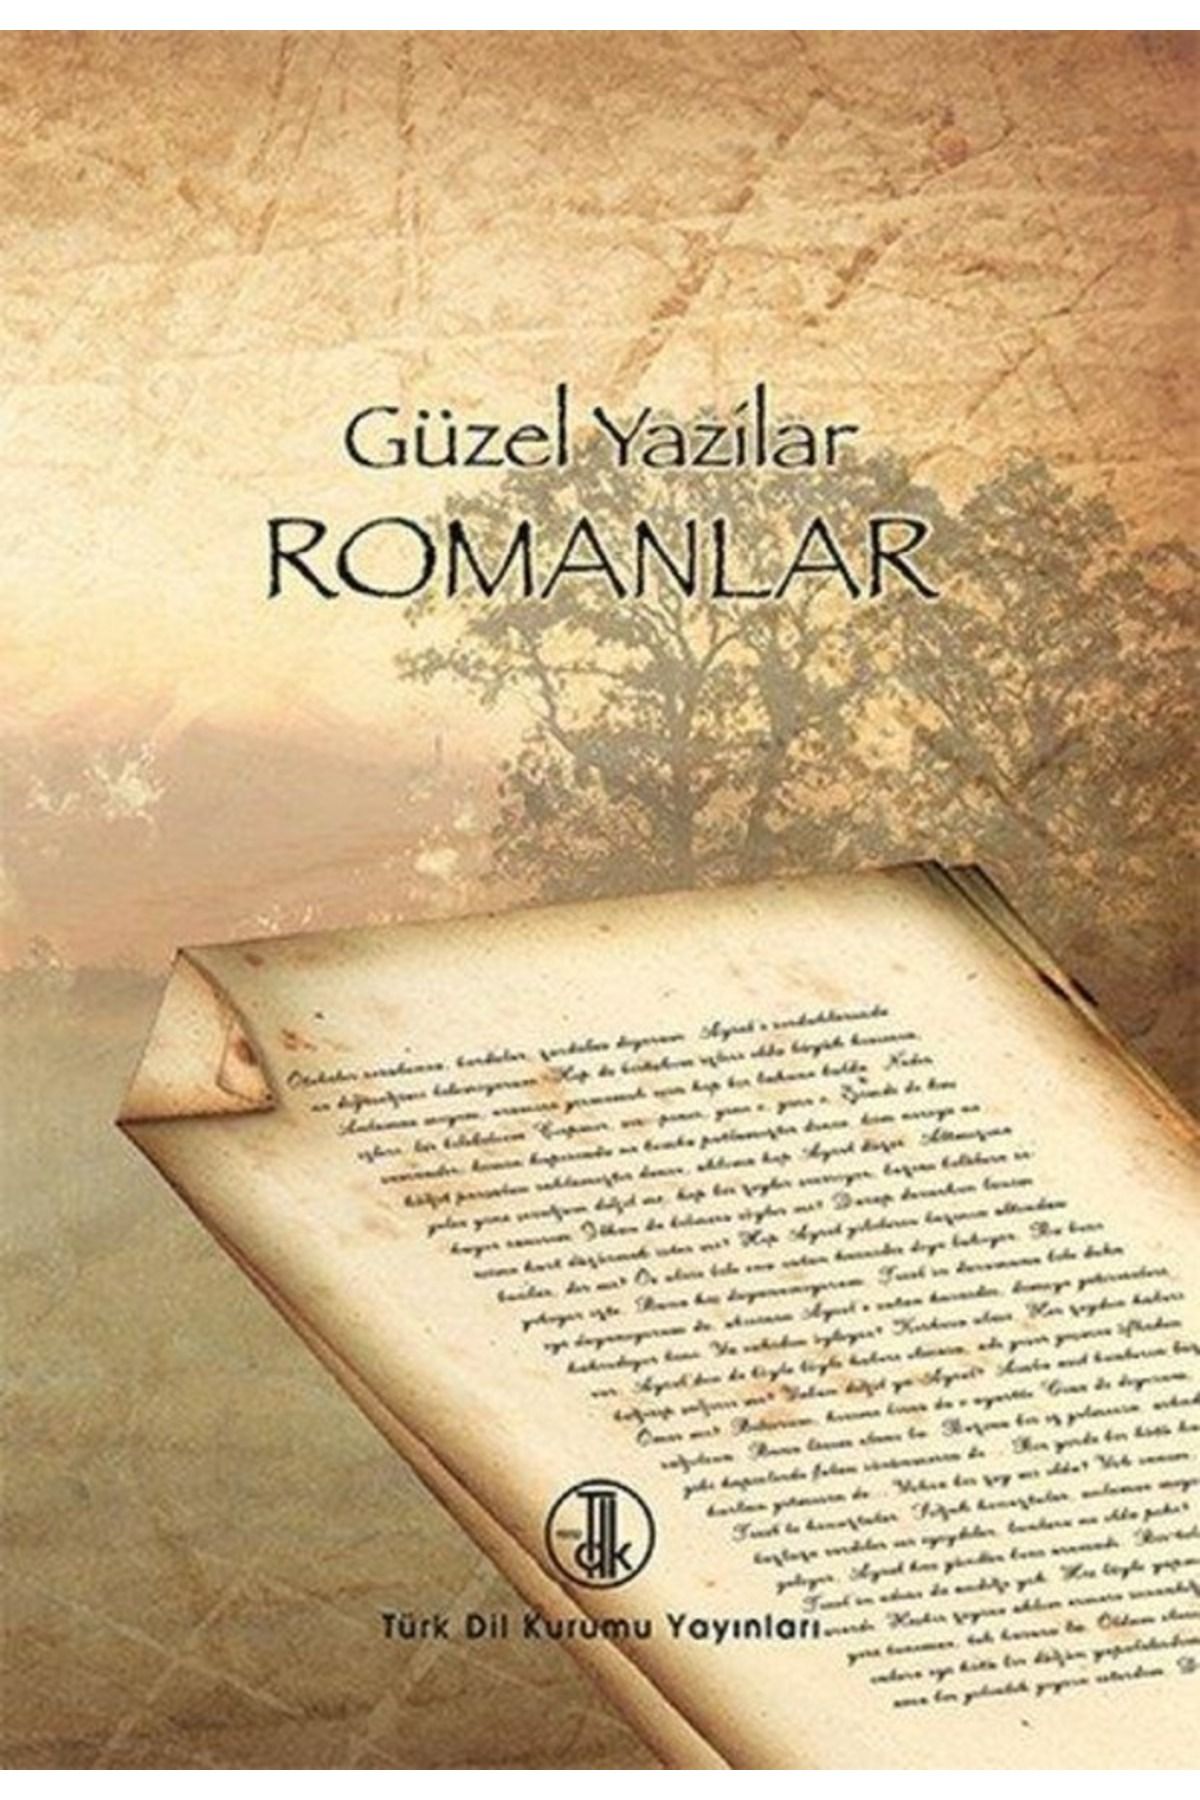 GunesStore Türk Dil Kurumu Yayınları Güzel Yazılar Romanlar, 2019 Gns-109